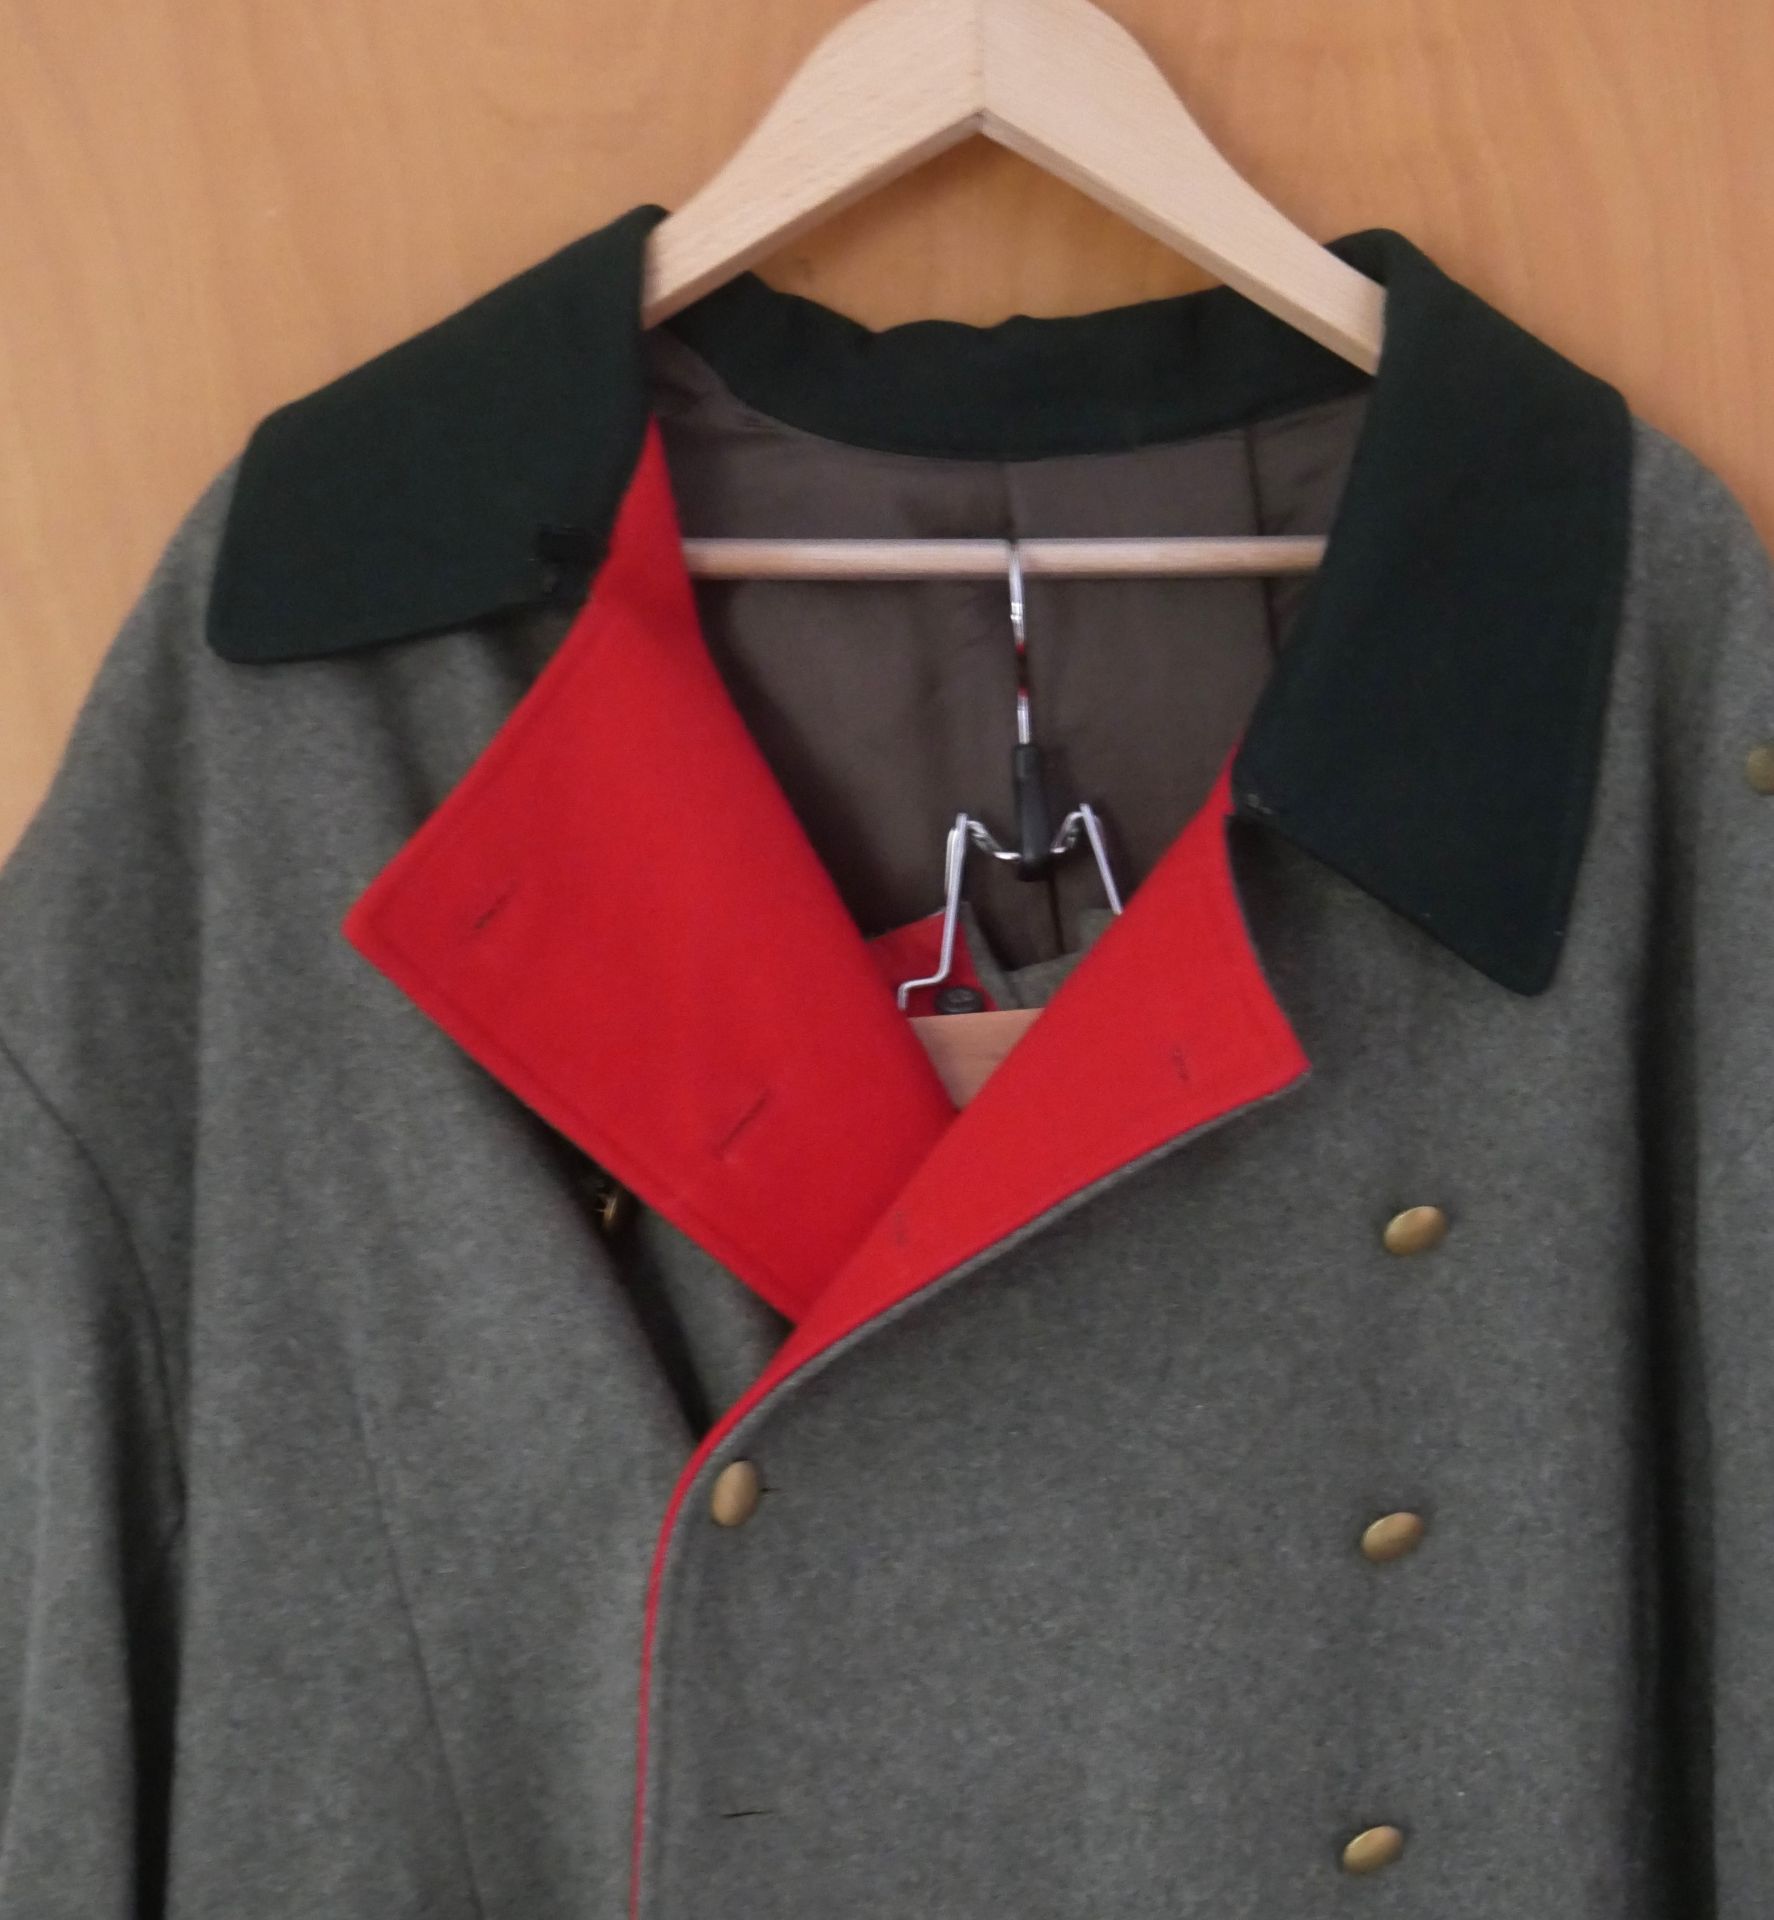 Uniformsmantel 2. Weltkrieg mit dazugehöriger Hose. Top Zustand. Bitte besichtigen - Image 2 of 3